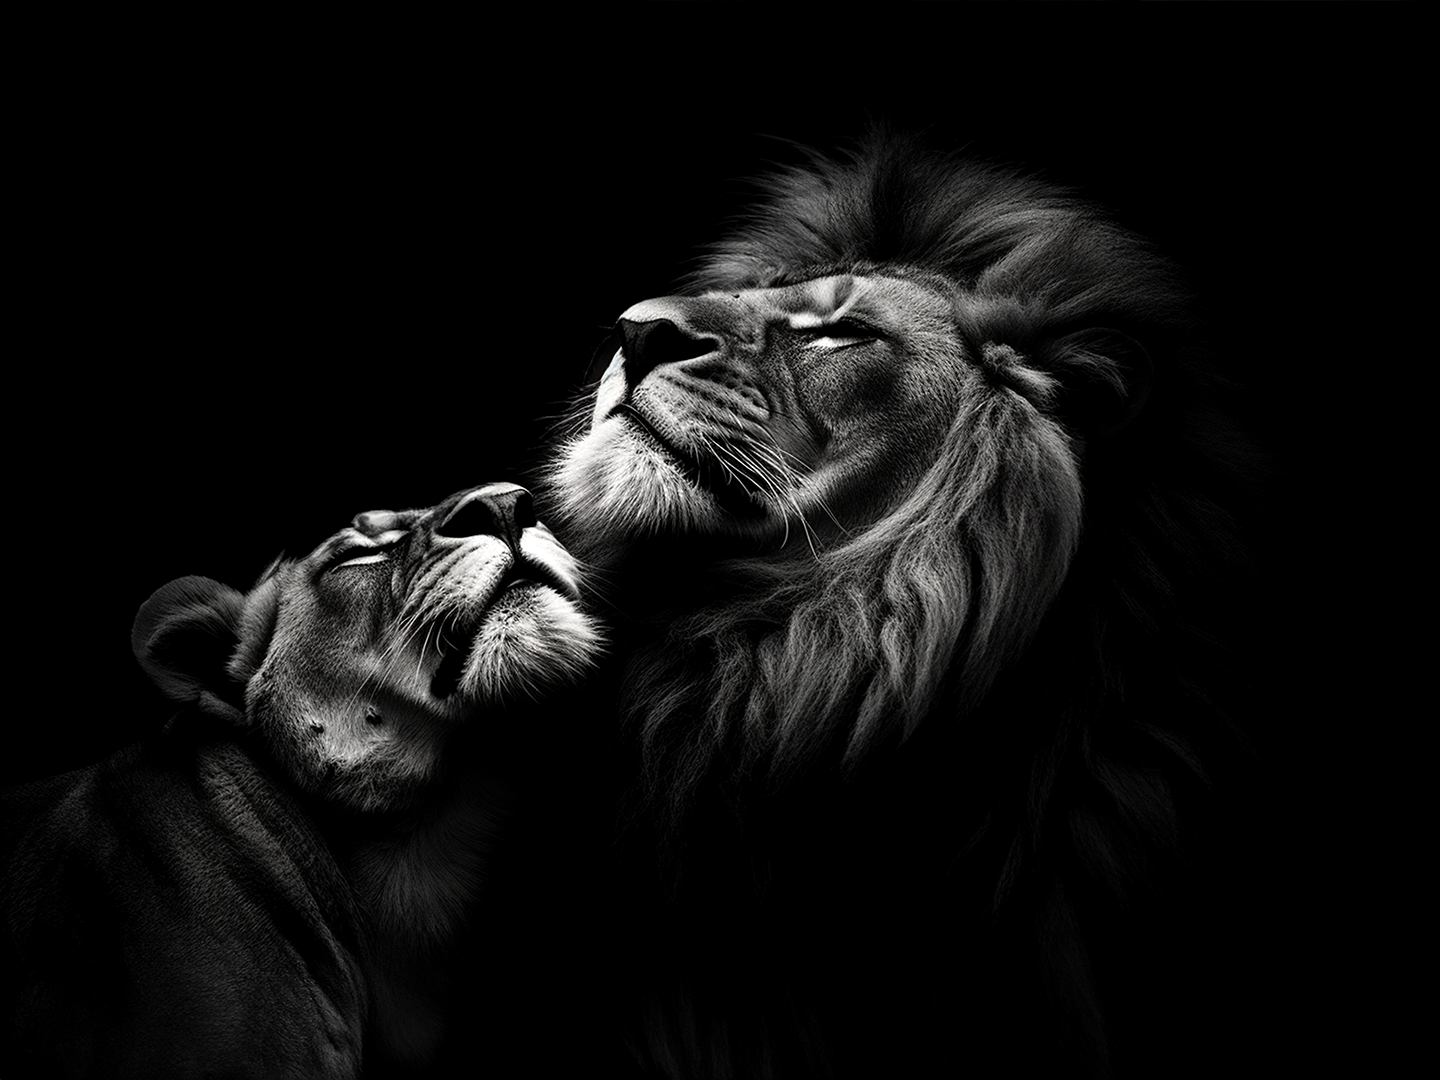 Photographie en noir et blanc d'une lionne et d'un lion dans un moment intime plein d'émotion